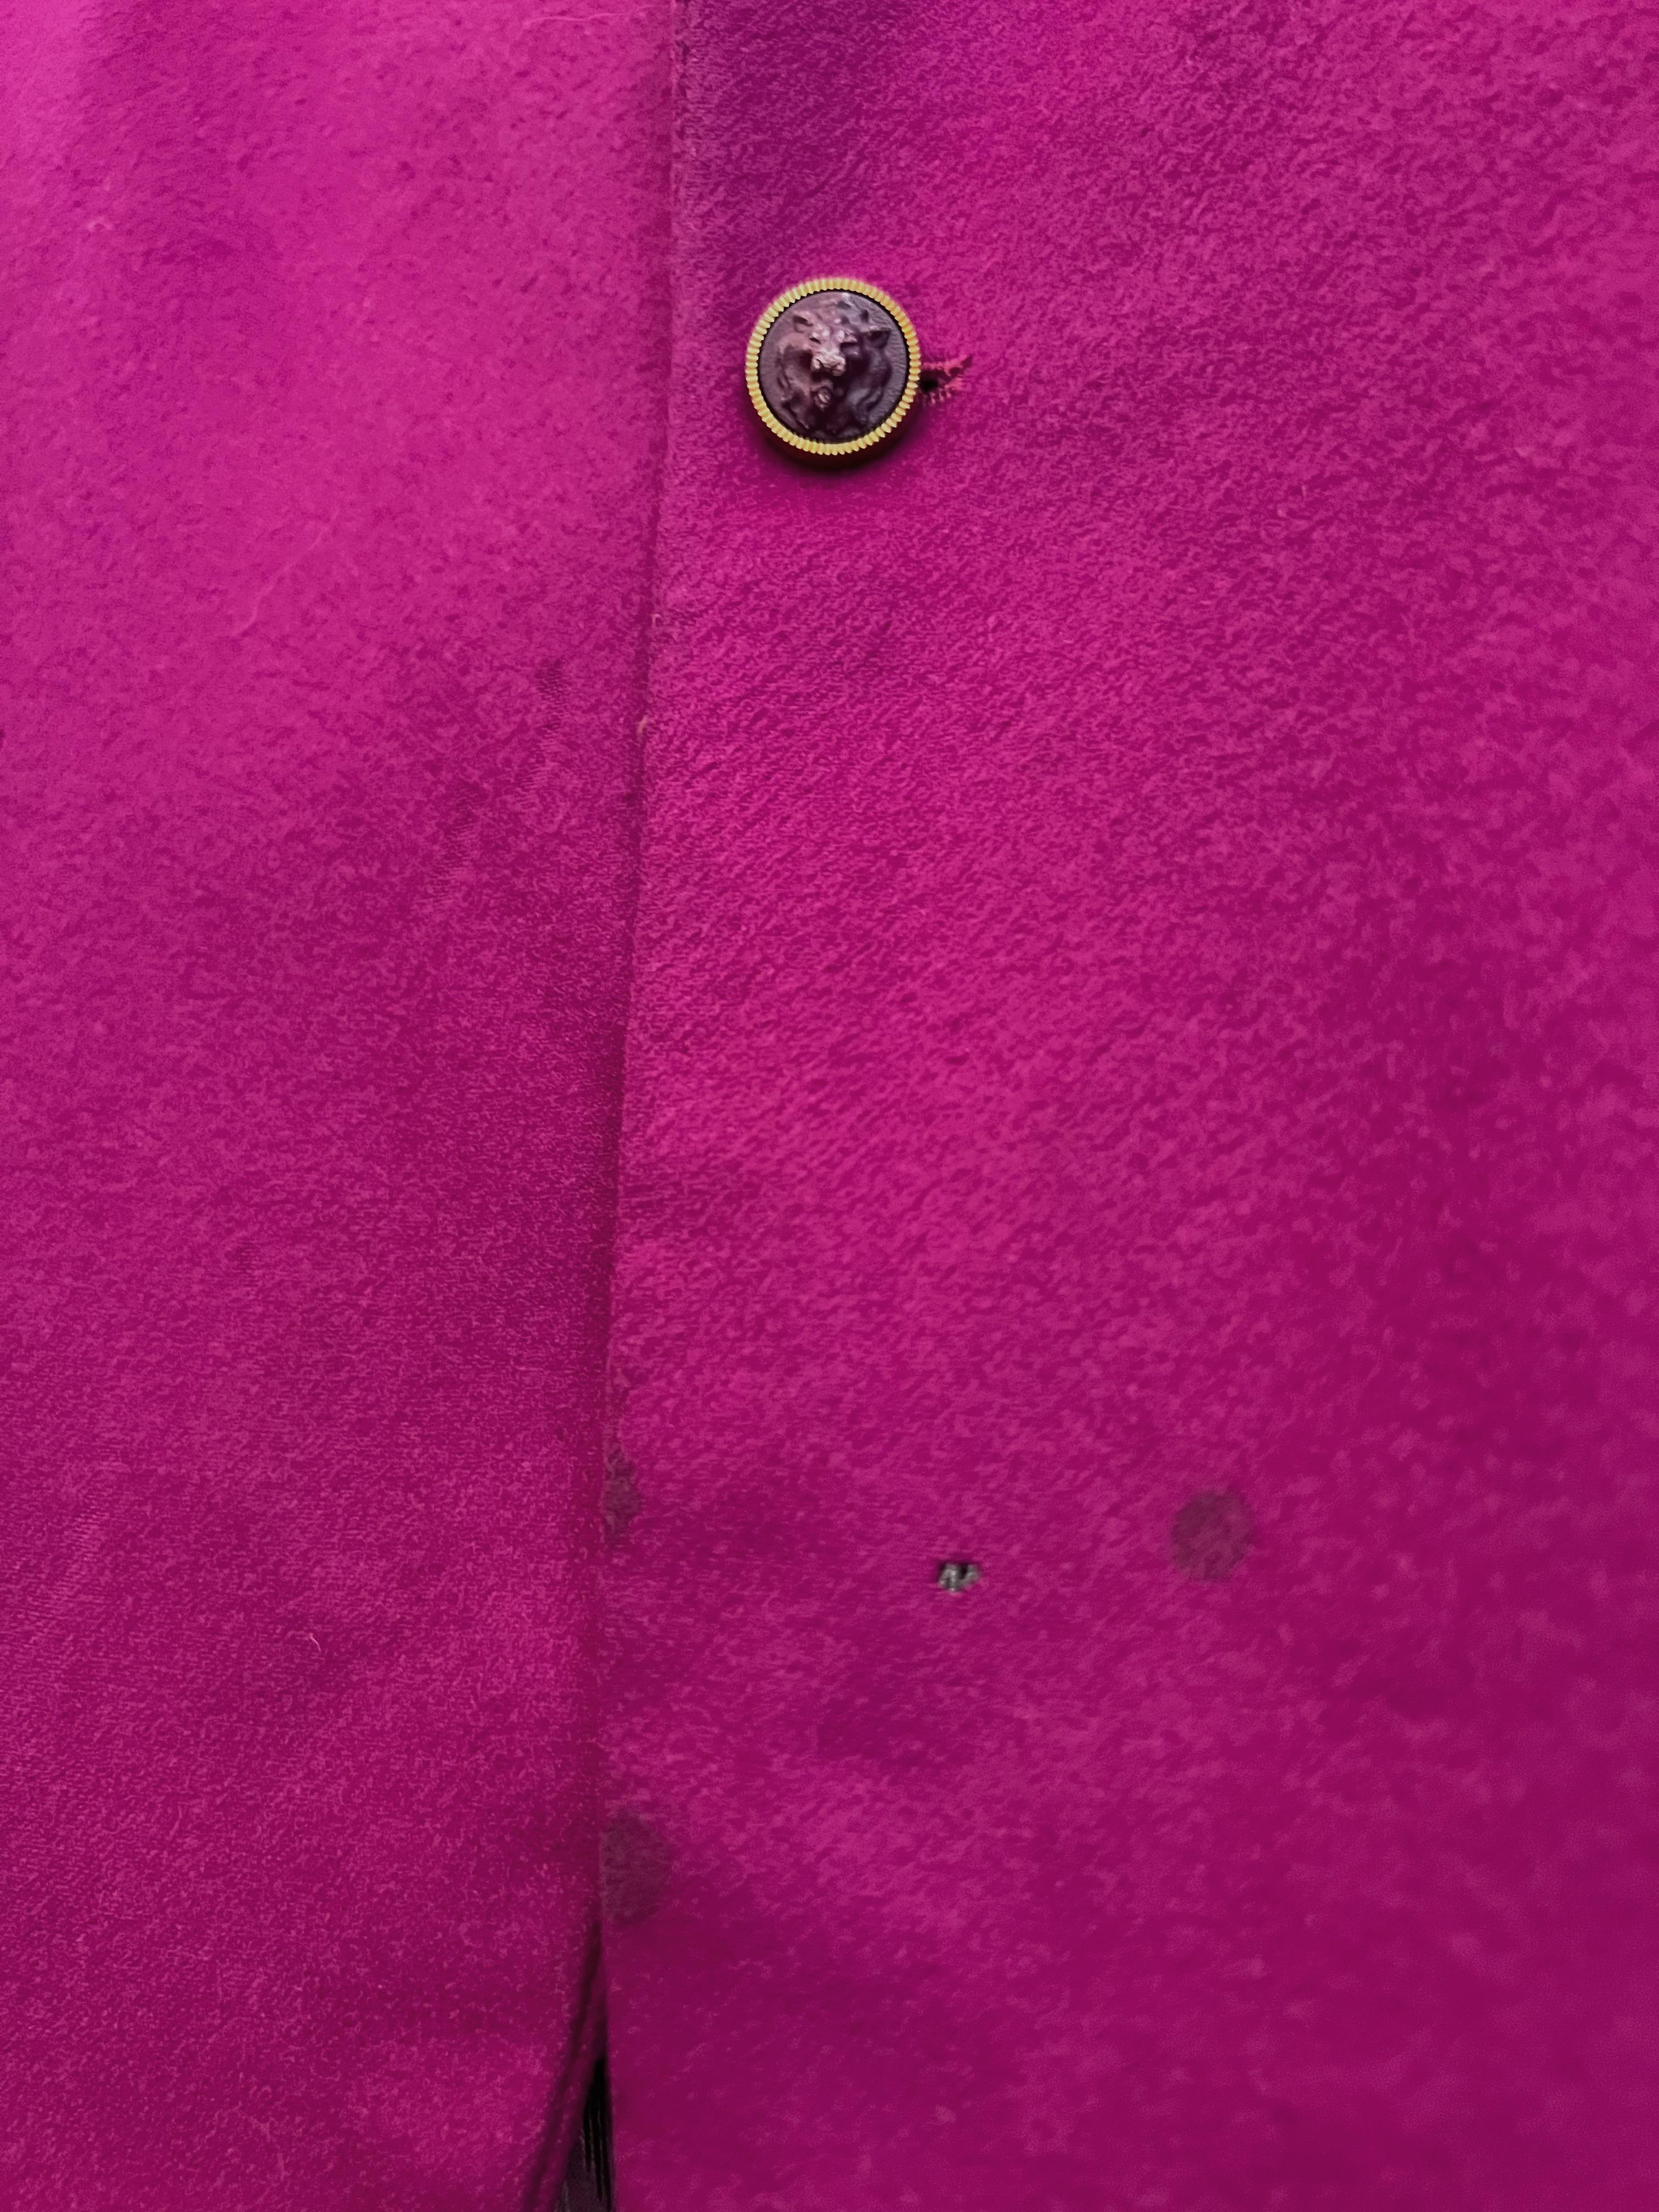 Versus by Gianni Versace - Veste blazer en cachemire doublée de rose magenta arc-en-ciel en vente 9